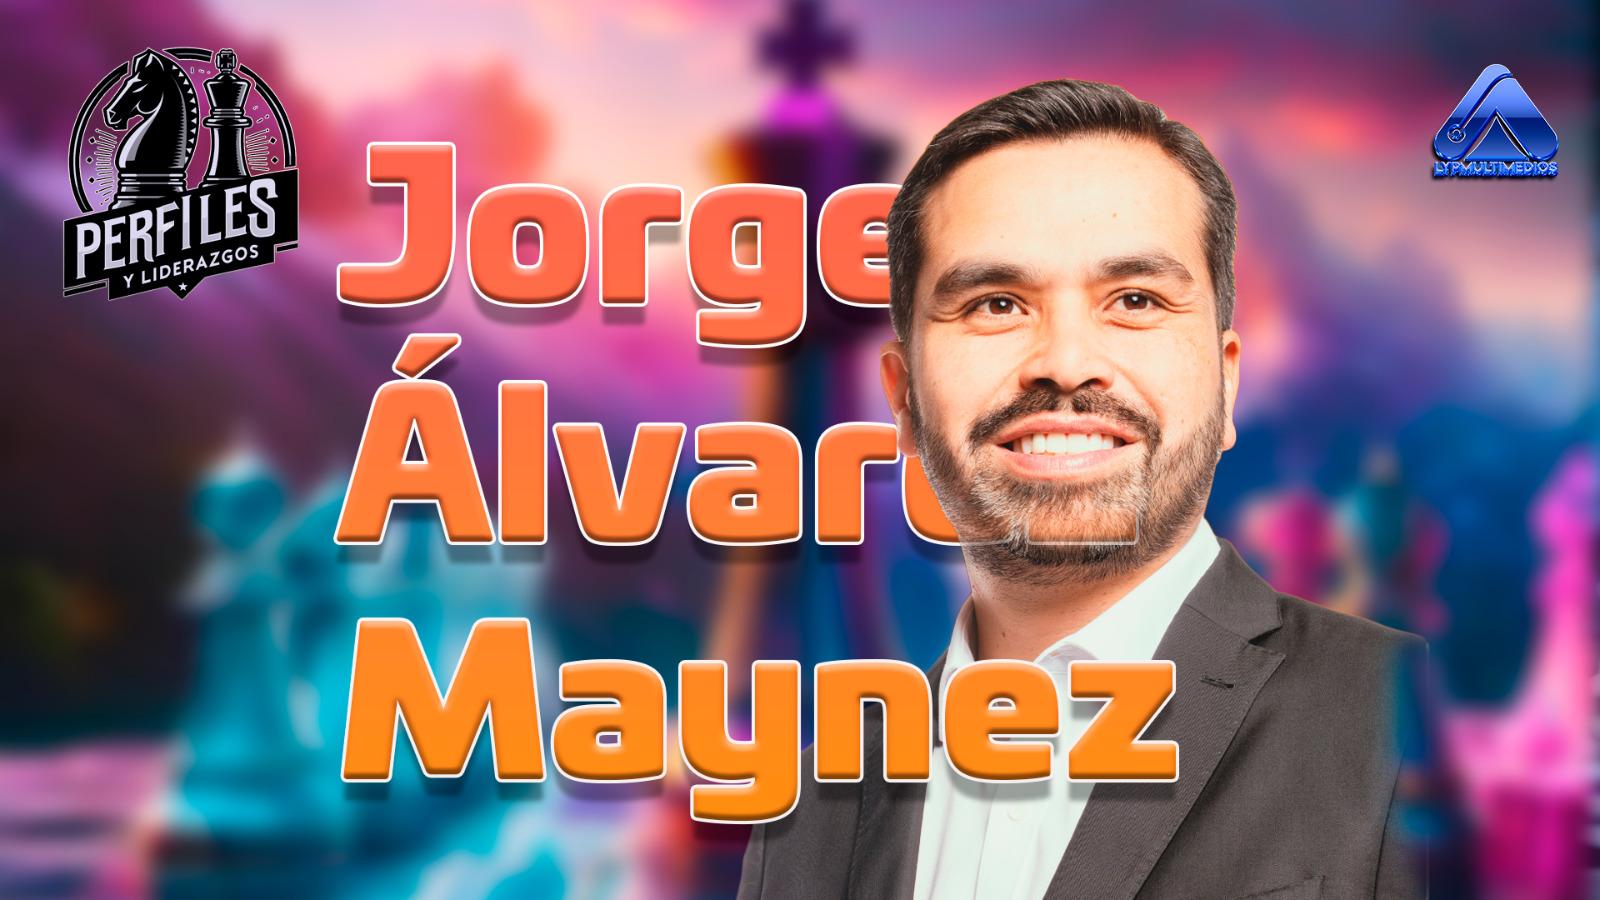 Perfil Público de Jorge Álvarez Máynez